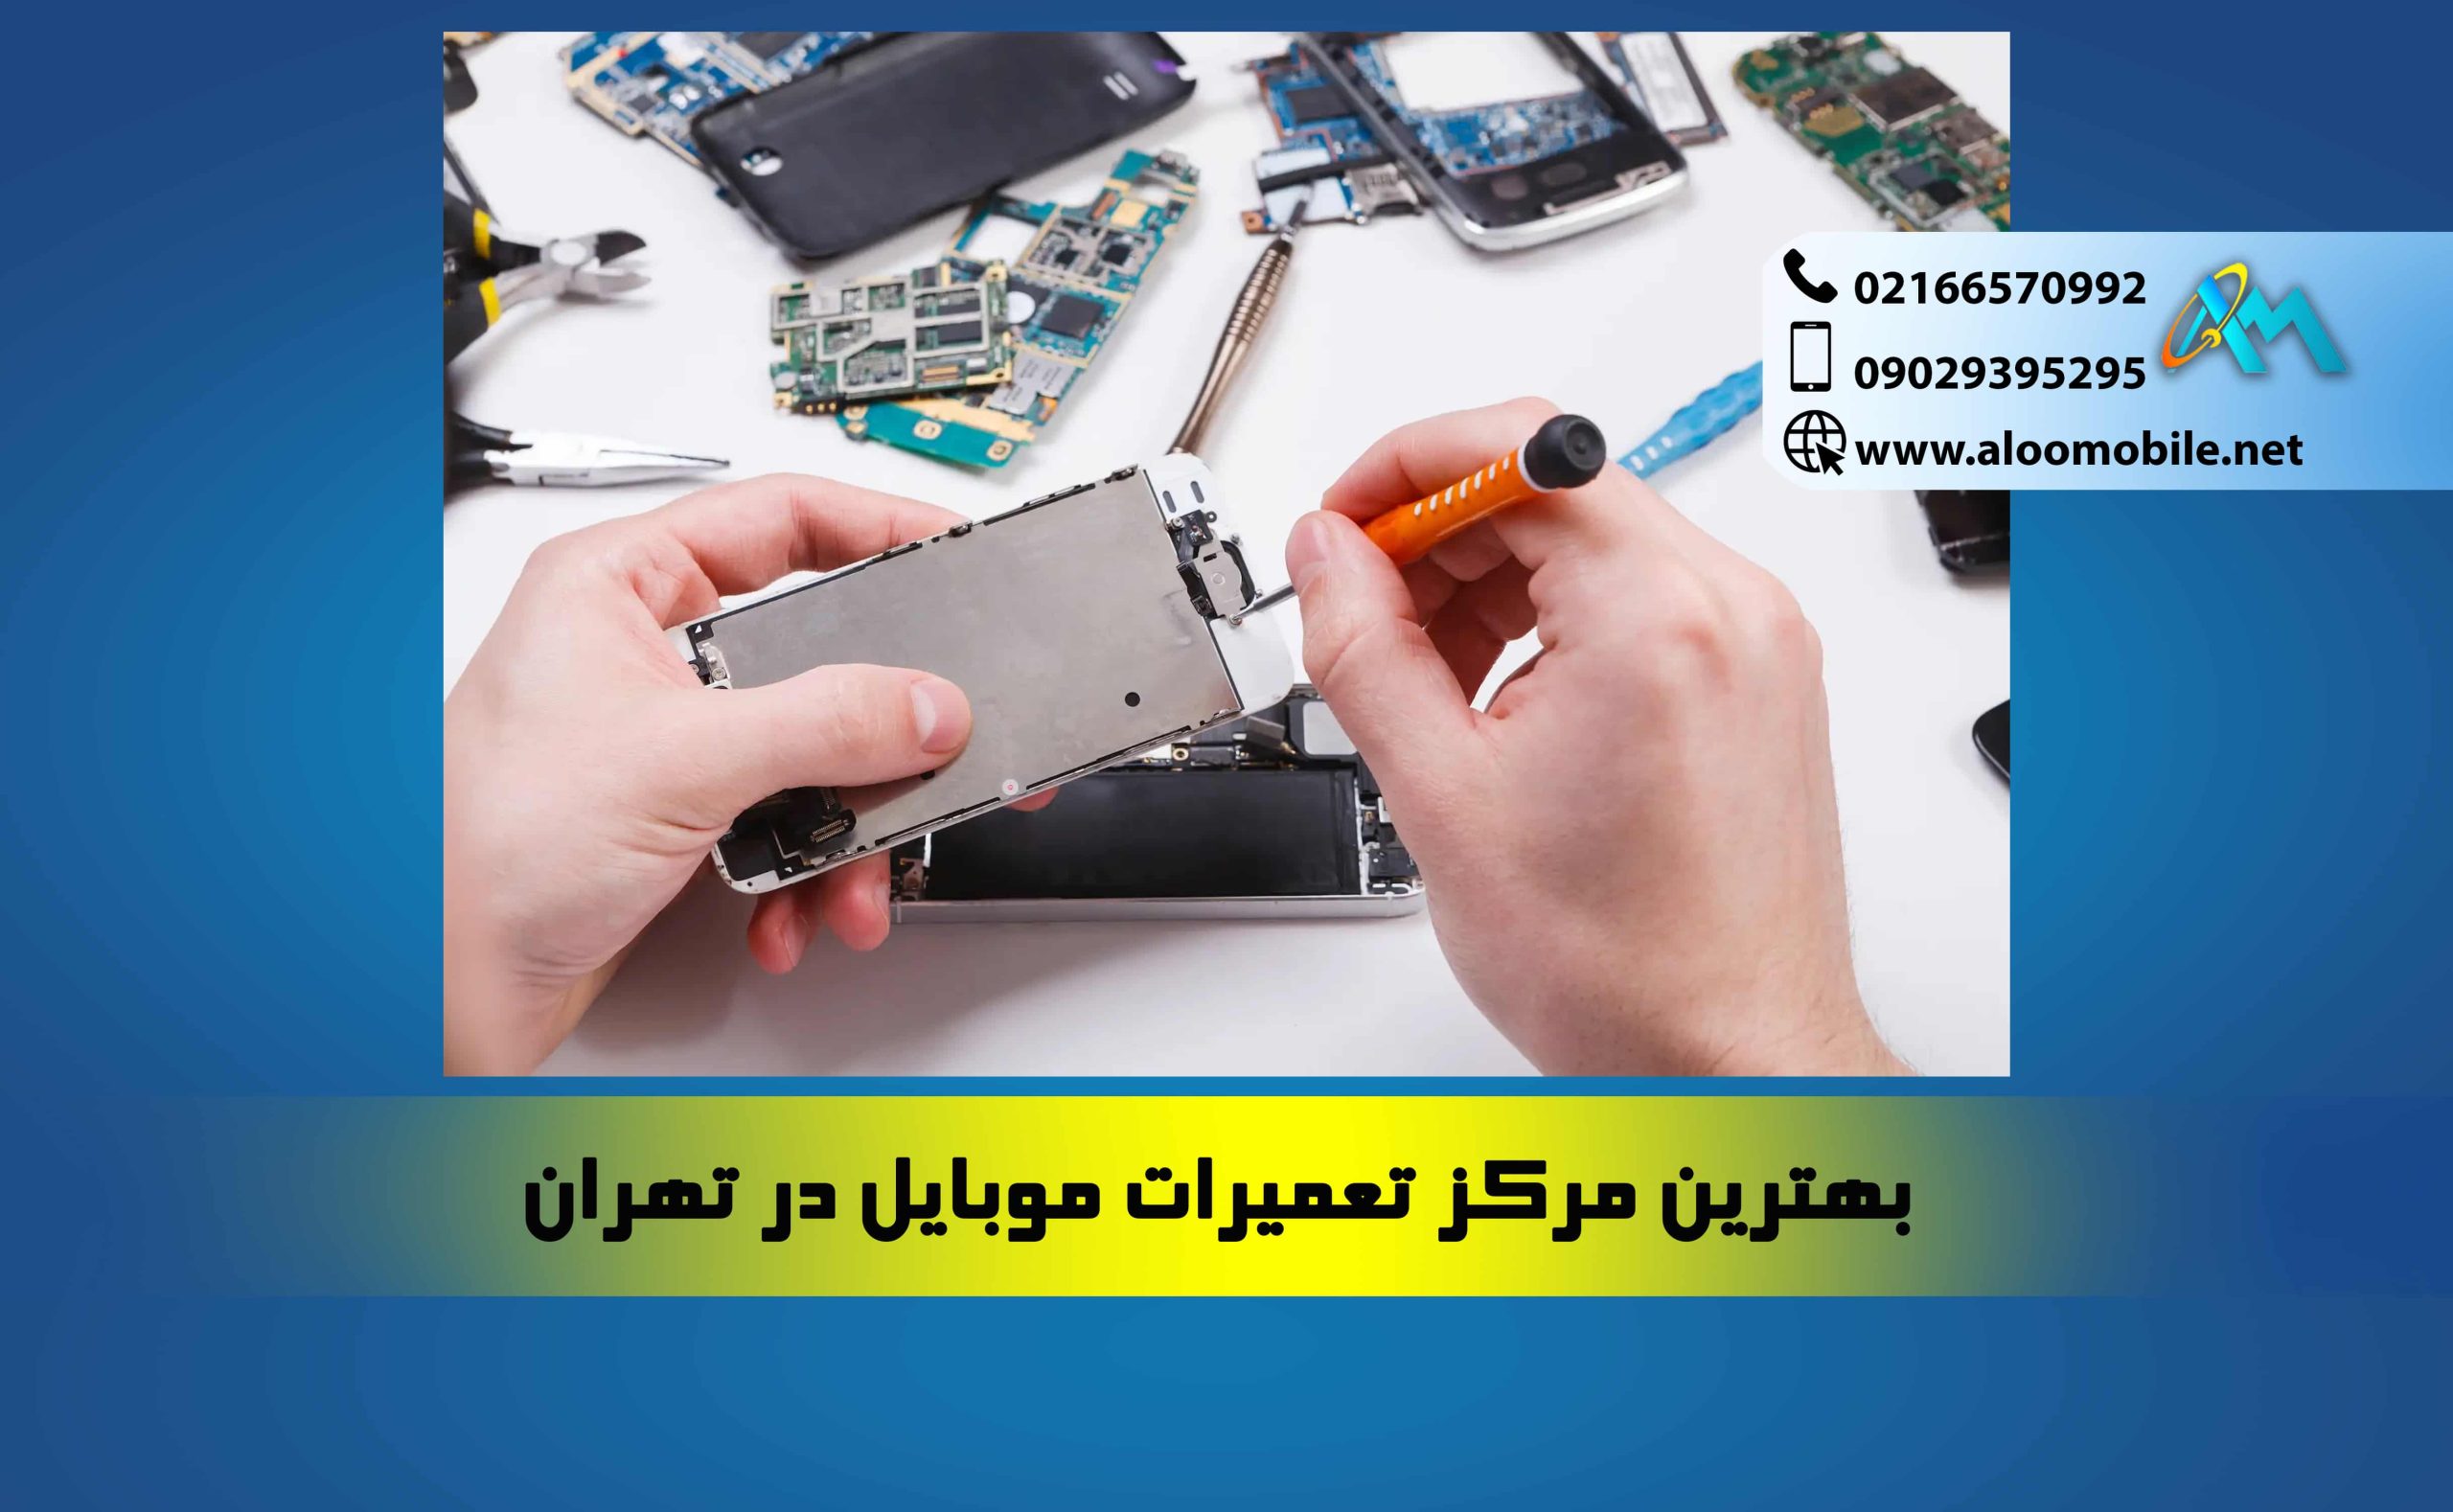 بهترین مرکز تعمیرات موبایل در تهران